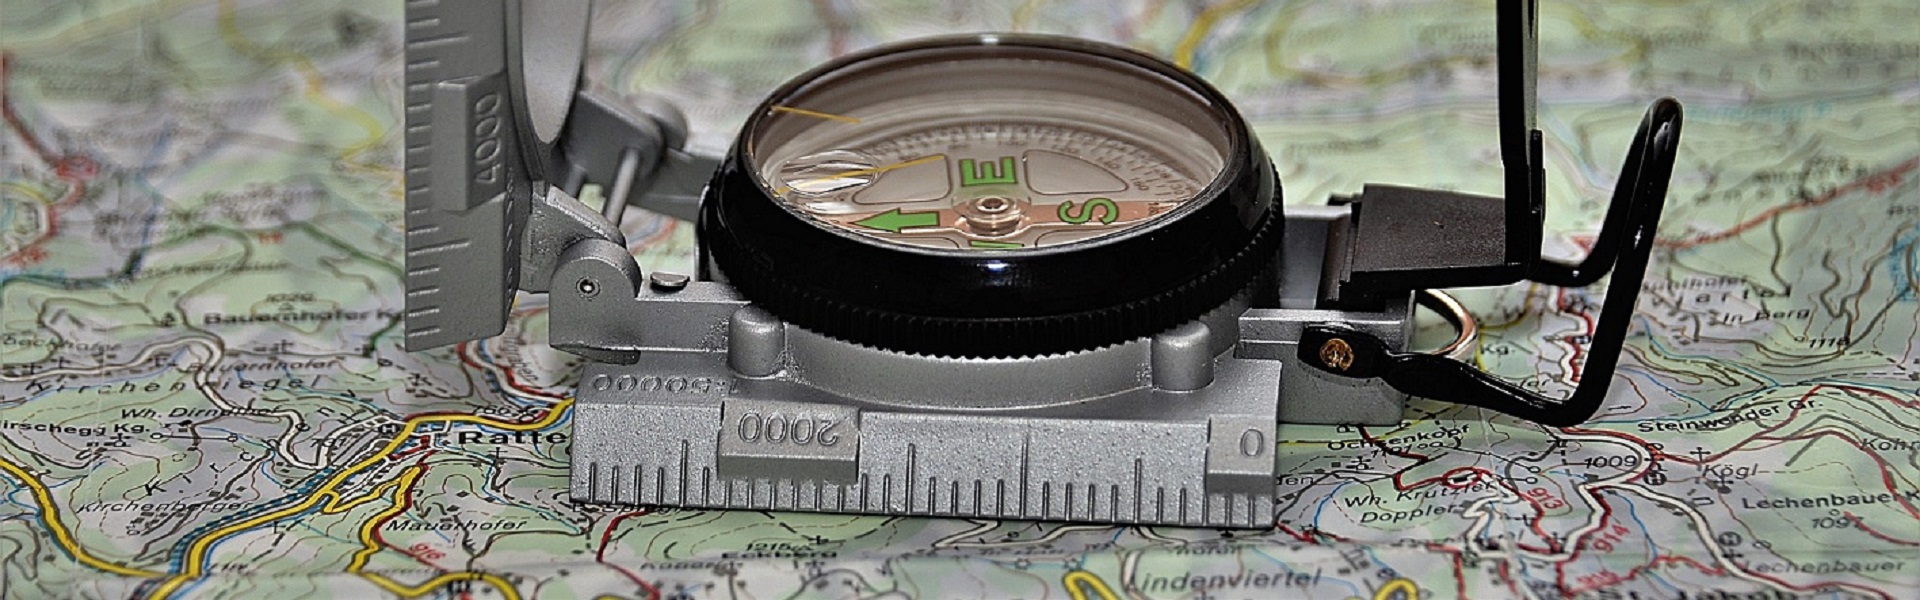 Kompass auf einer Landkarte